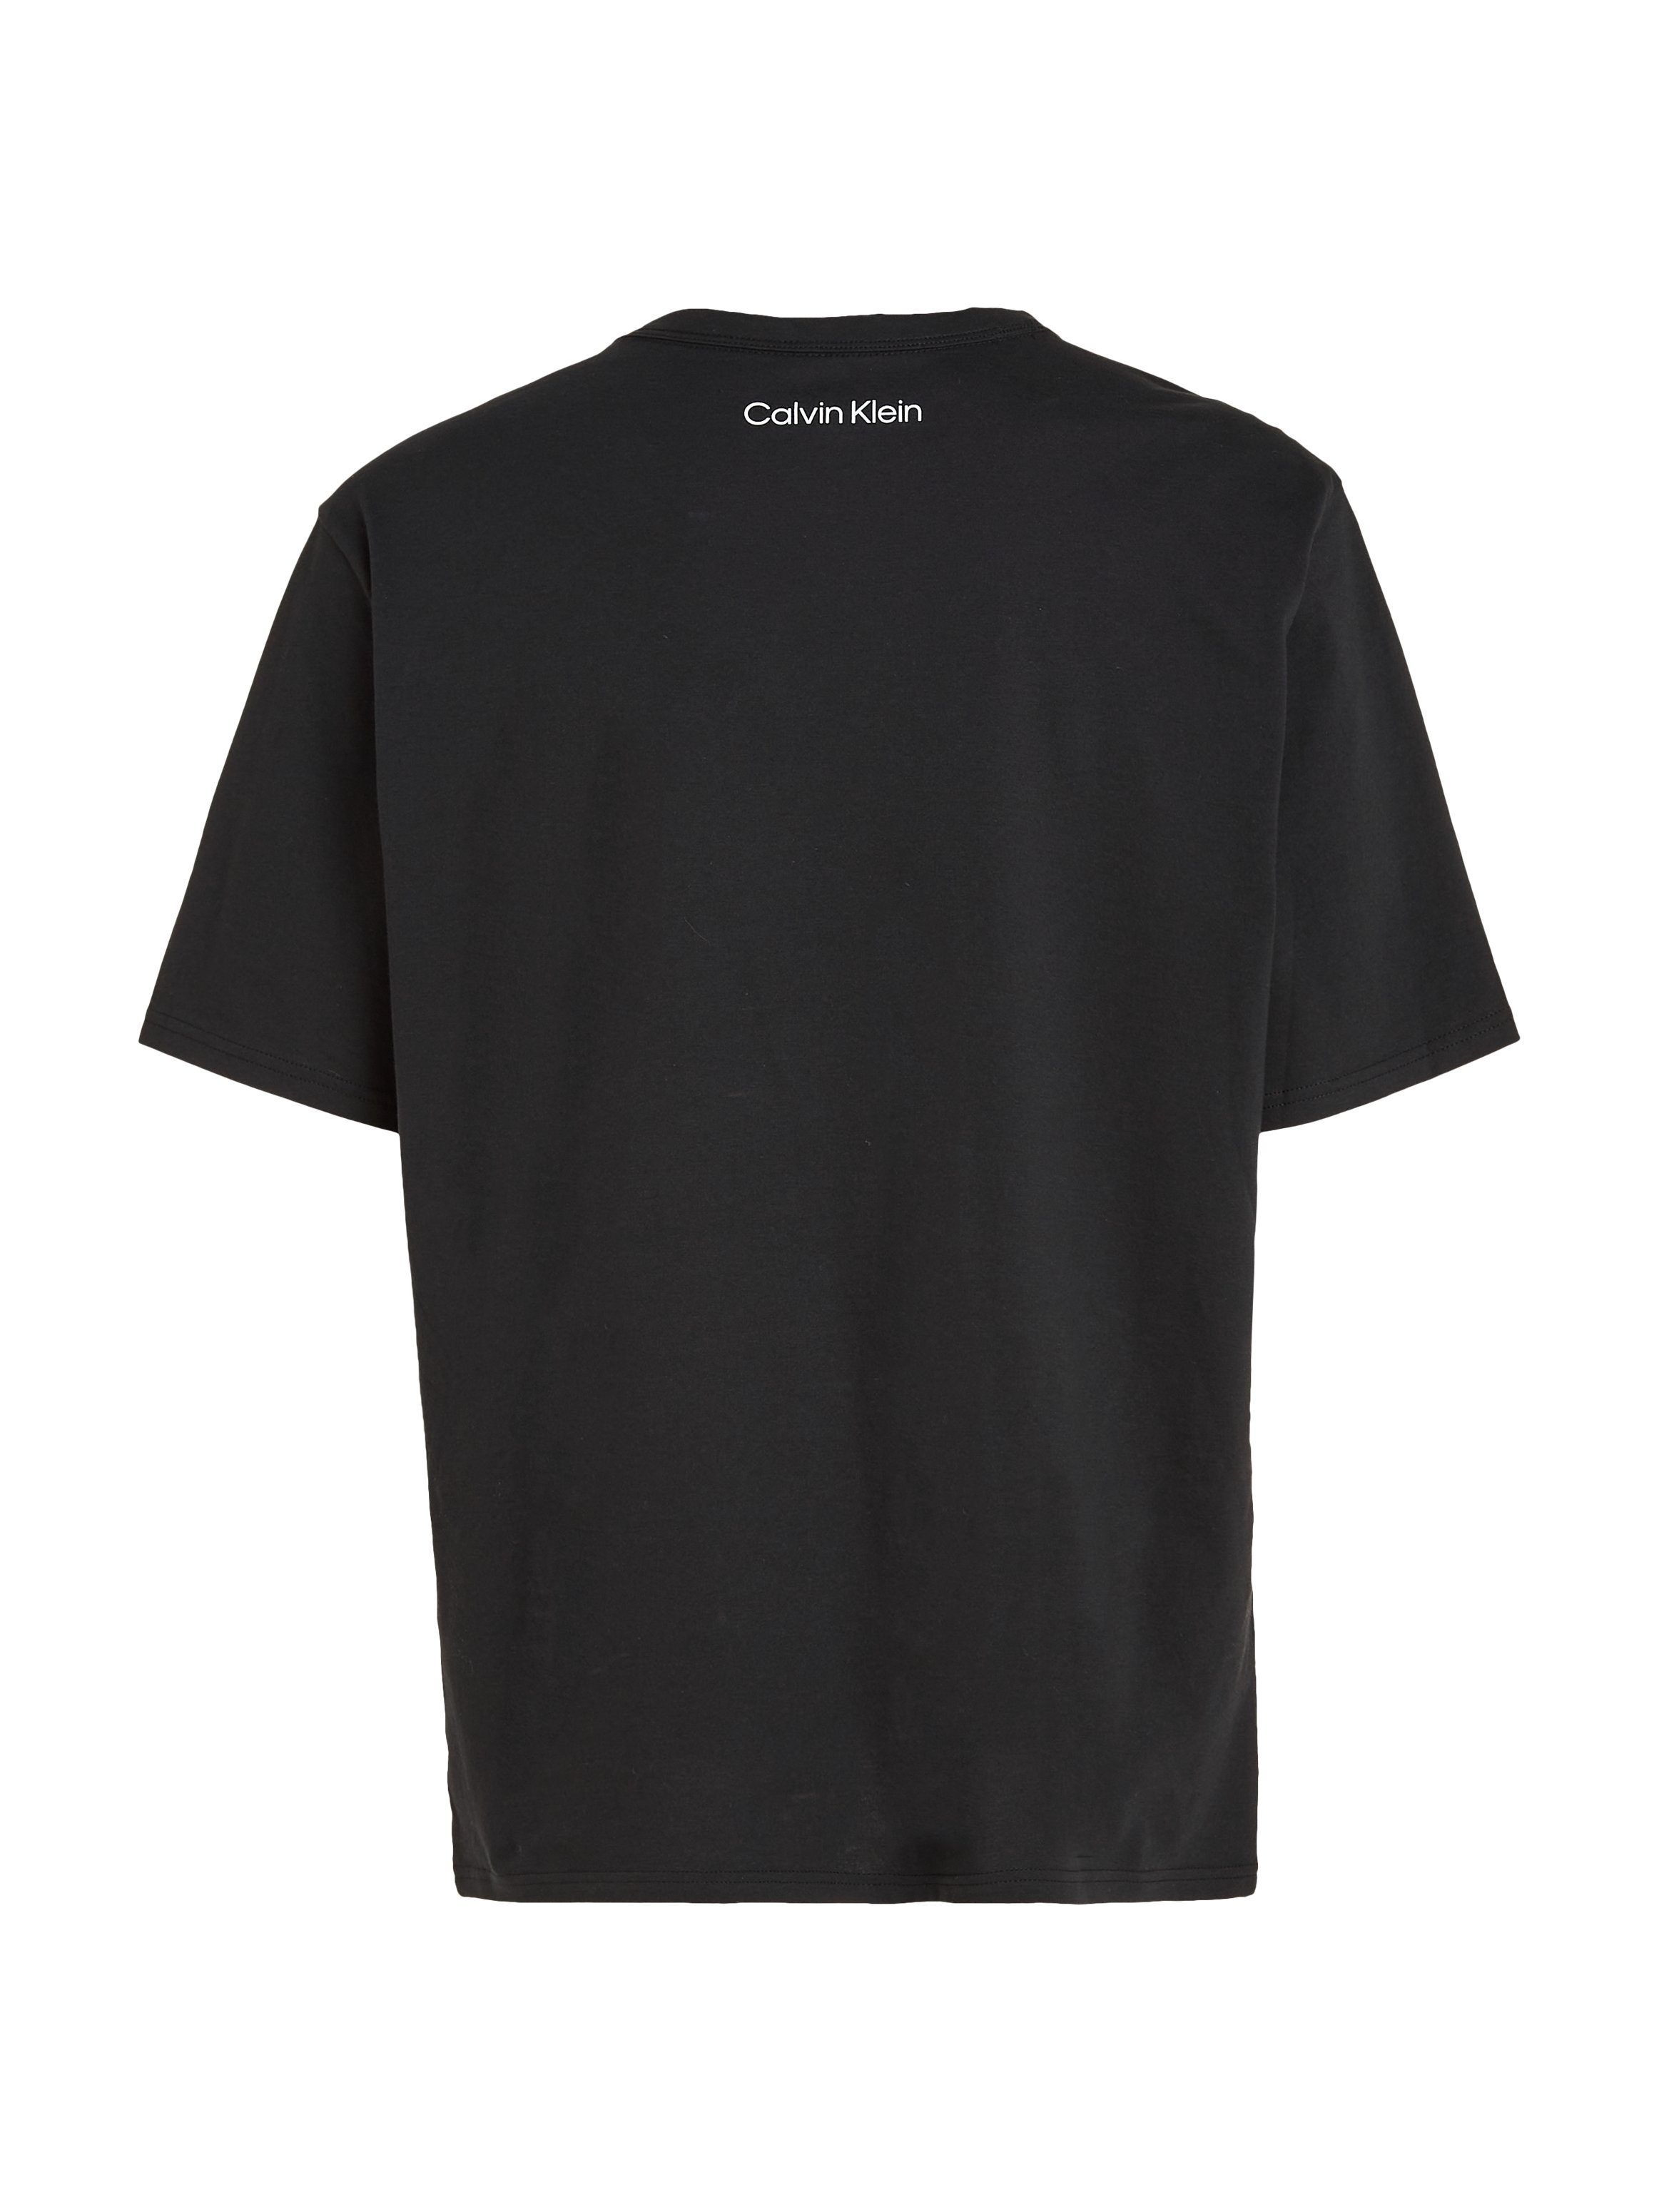 CREW S/S Brust auf Calvin T-Shirt Logodruck mit Underwear BLACK Klein der NECK